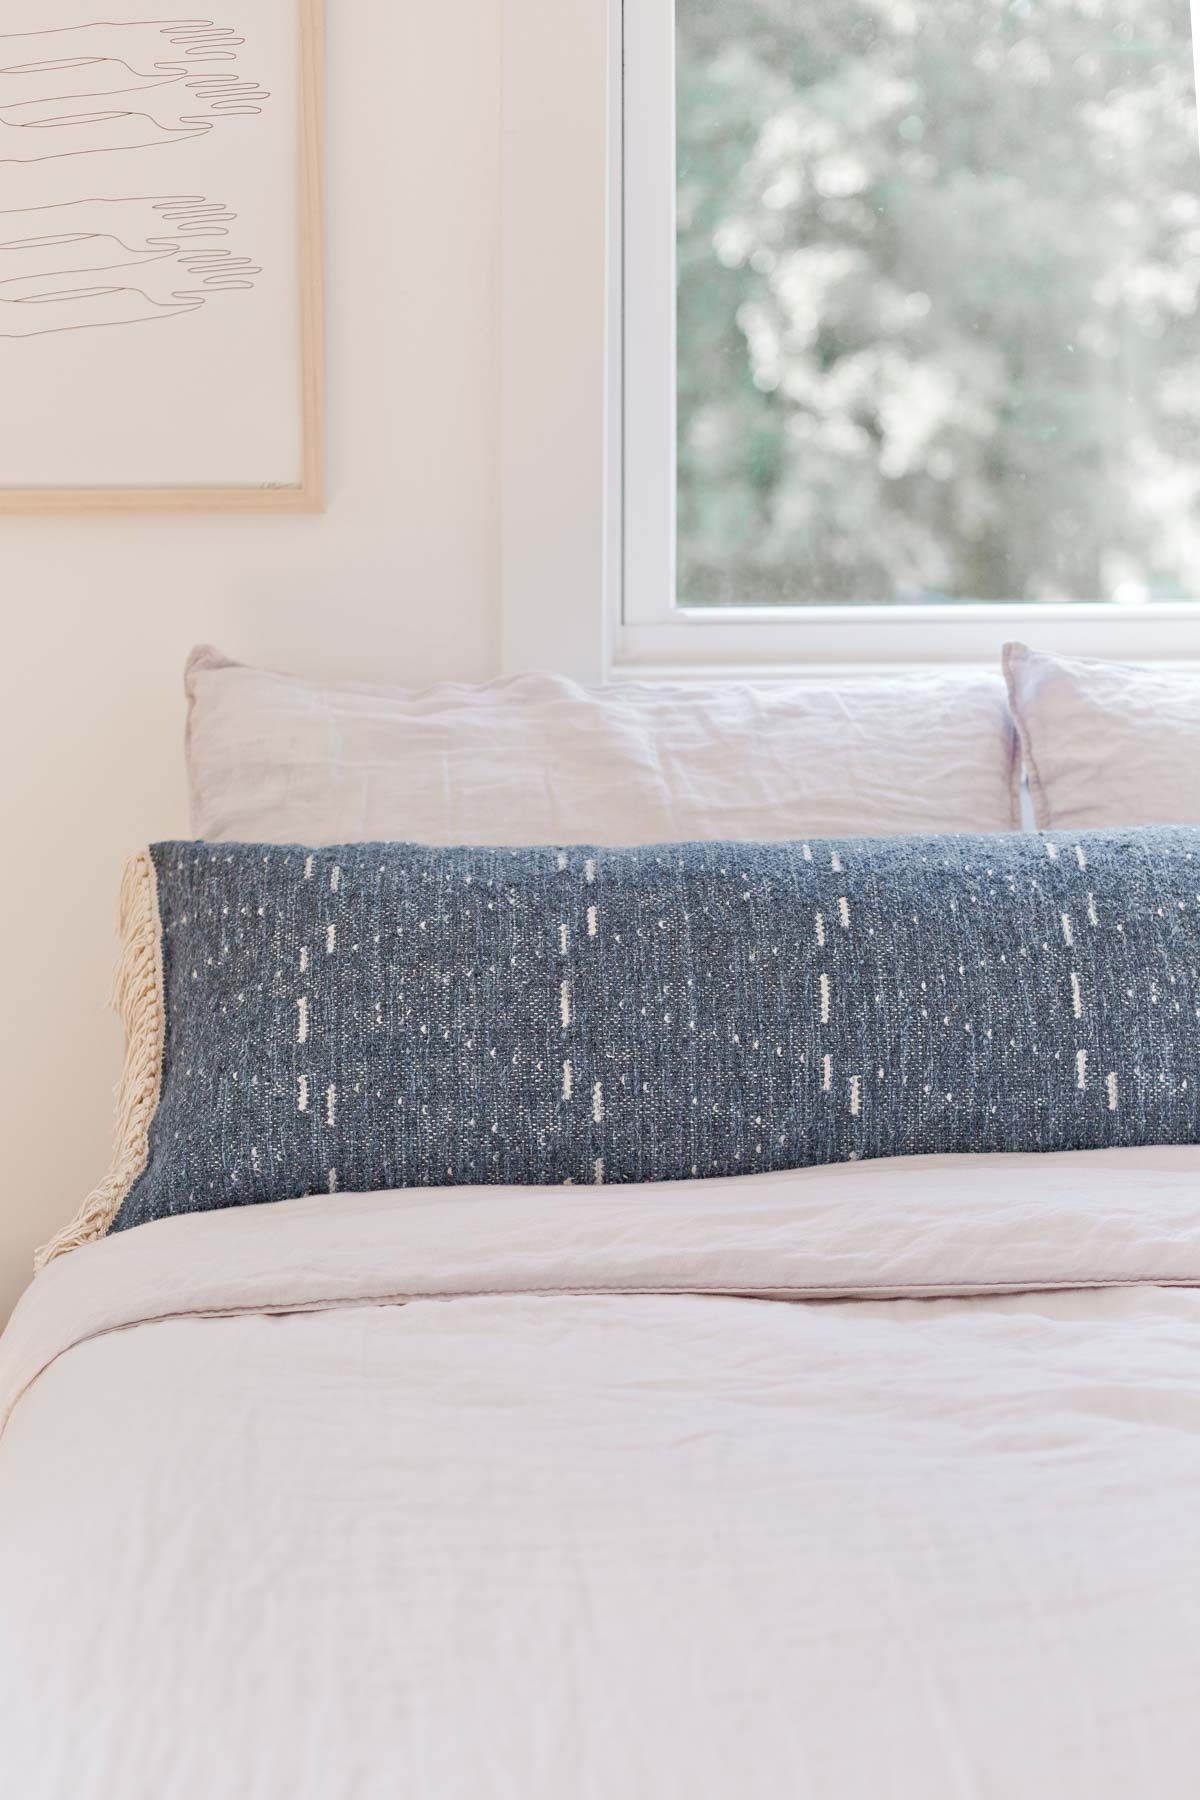 How to Make an Extra Long Lumbar Pillow - How to Make an Extra Long Lumbar Pillow -   16 diy Pillows sofa ideas